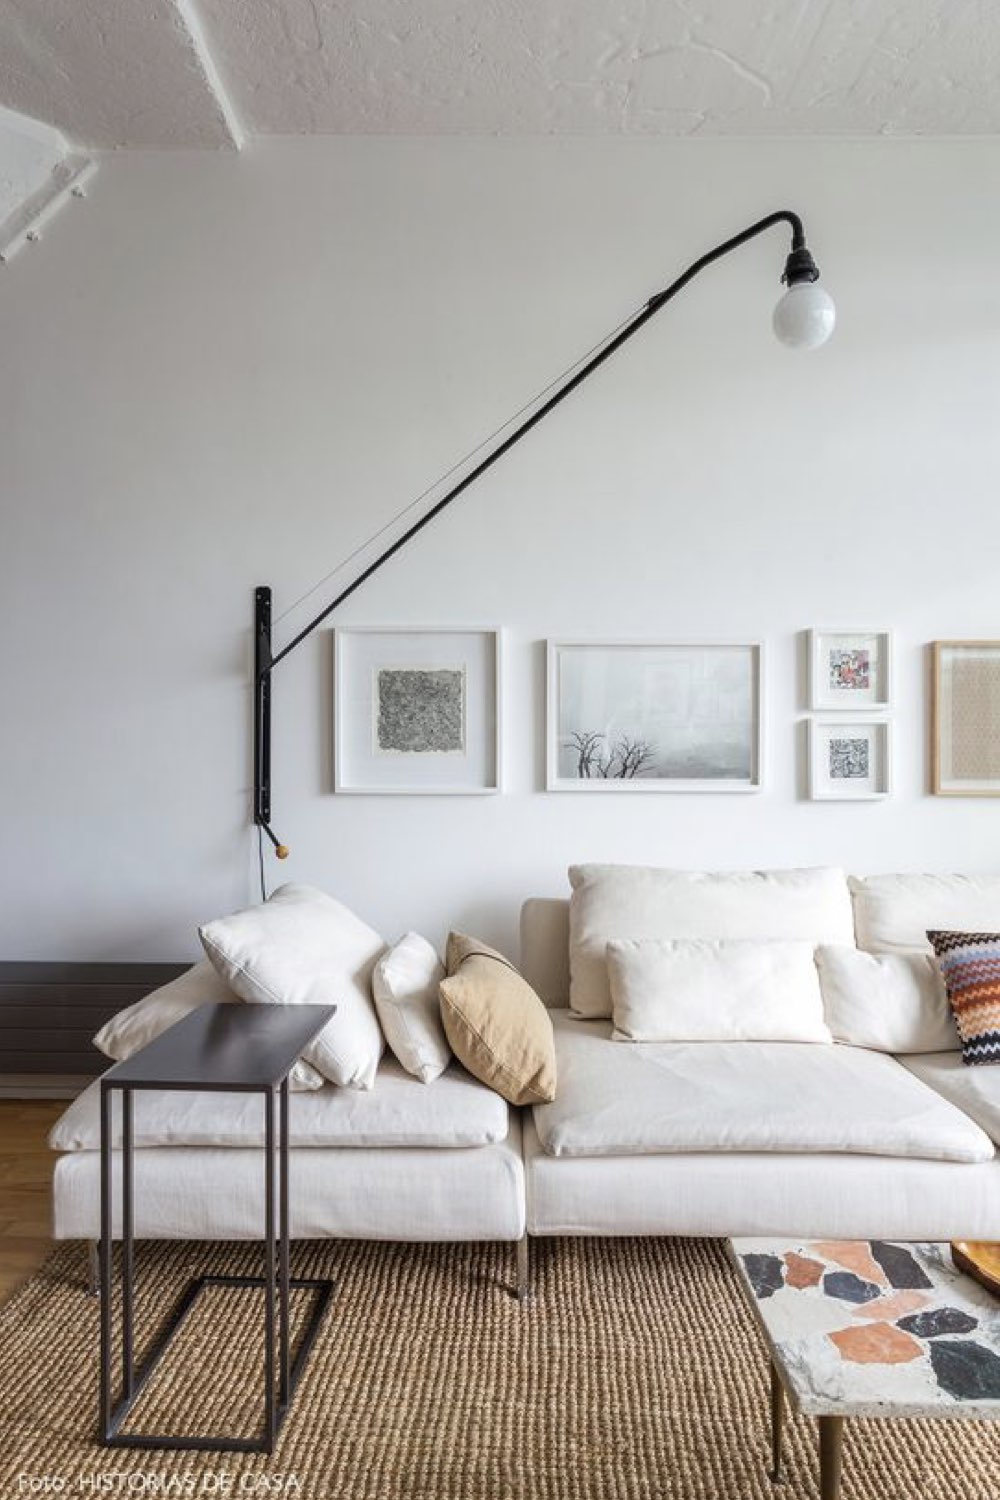 deco salon reussie exemple minimaliste design moderne canapé beige tapis naturel applique murale télescopique noire